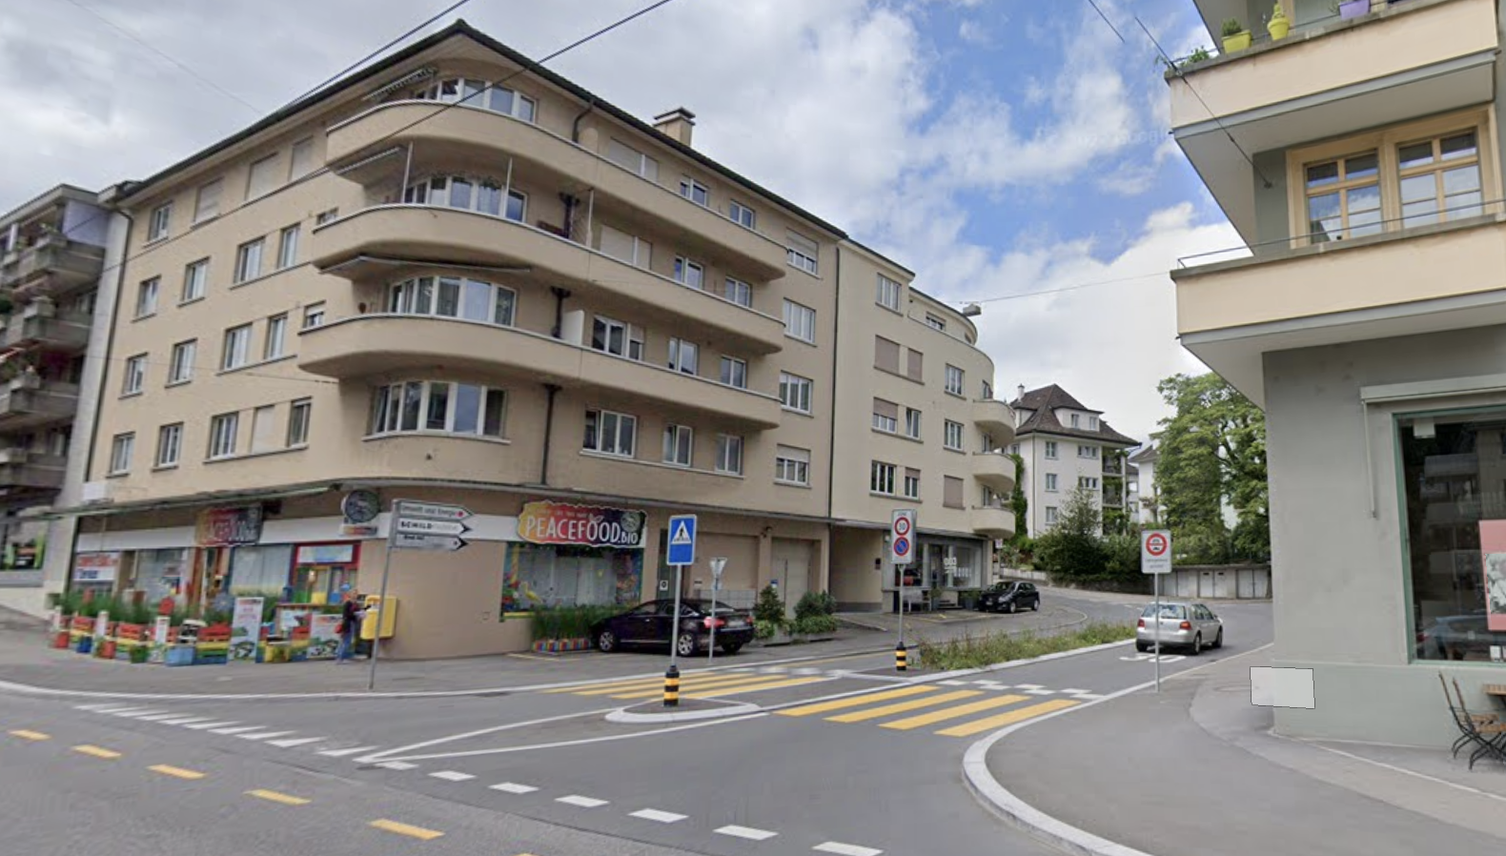 Luzern lehnt Poller ab, will aber mehr Polizeikontrollen